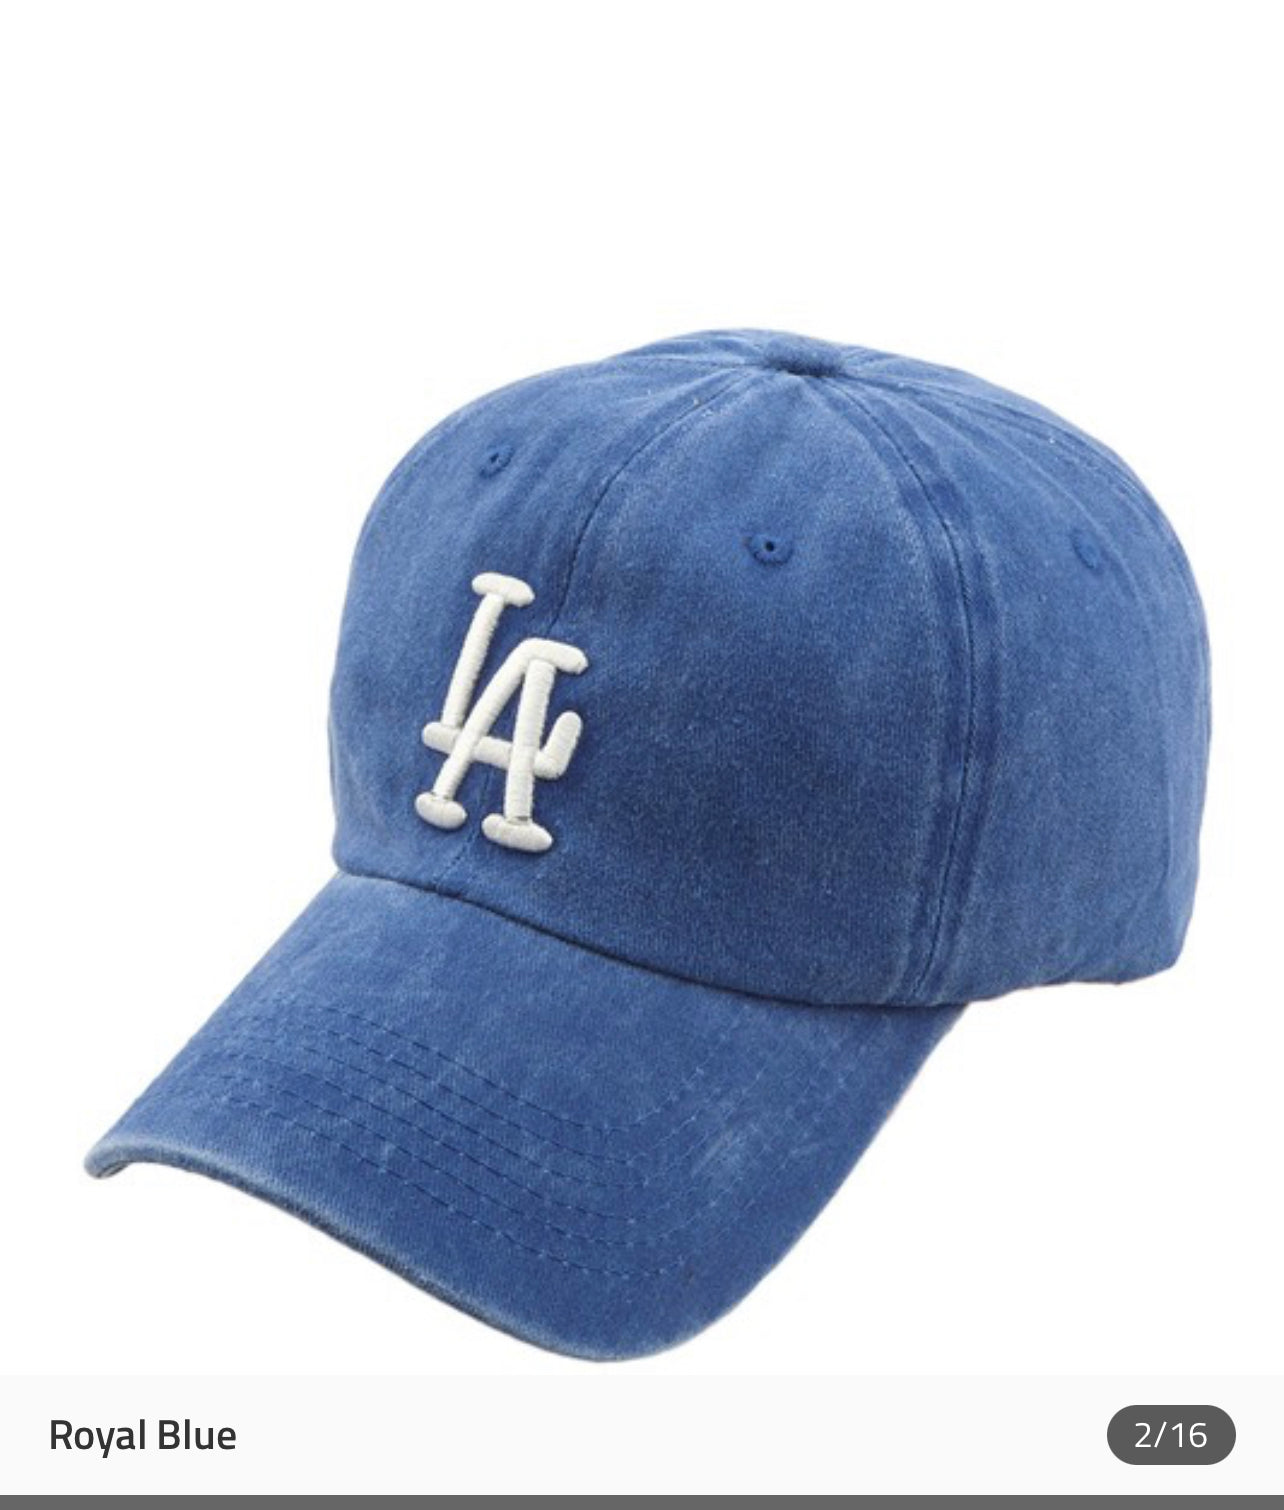 Royal Blue LA Baseball Cap